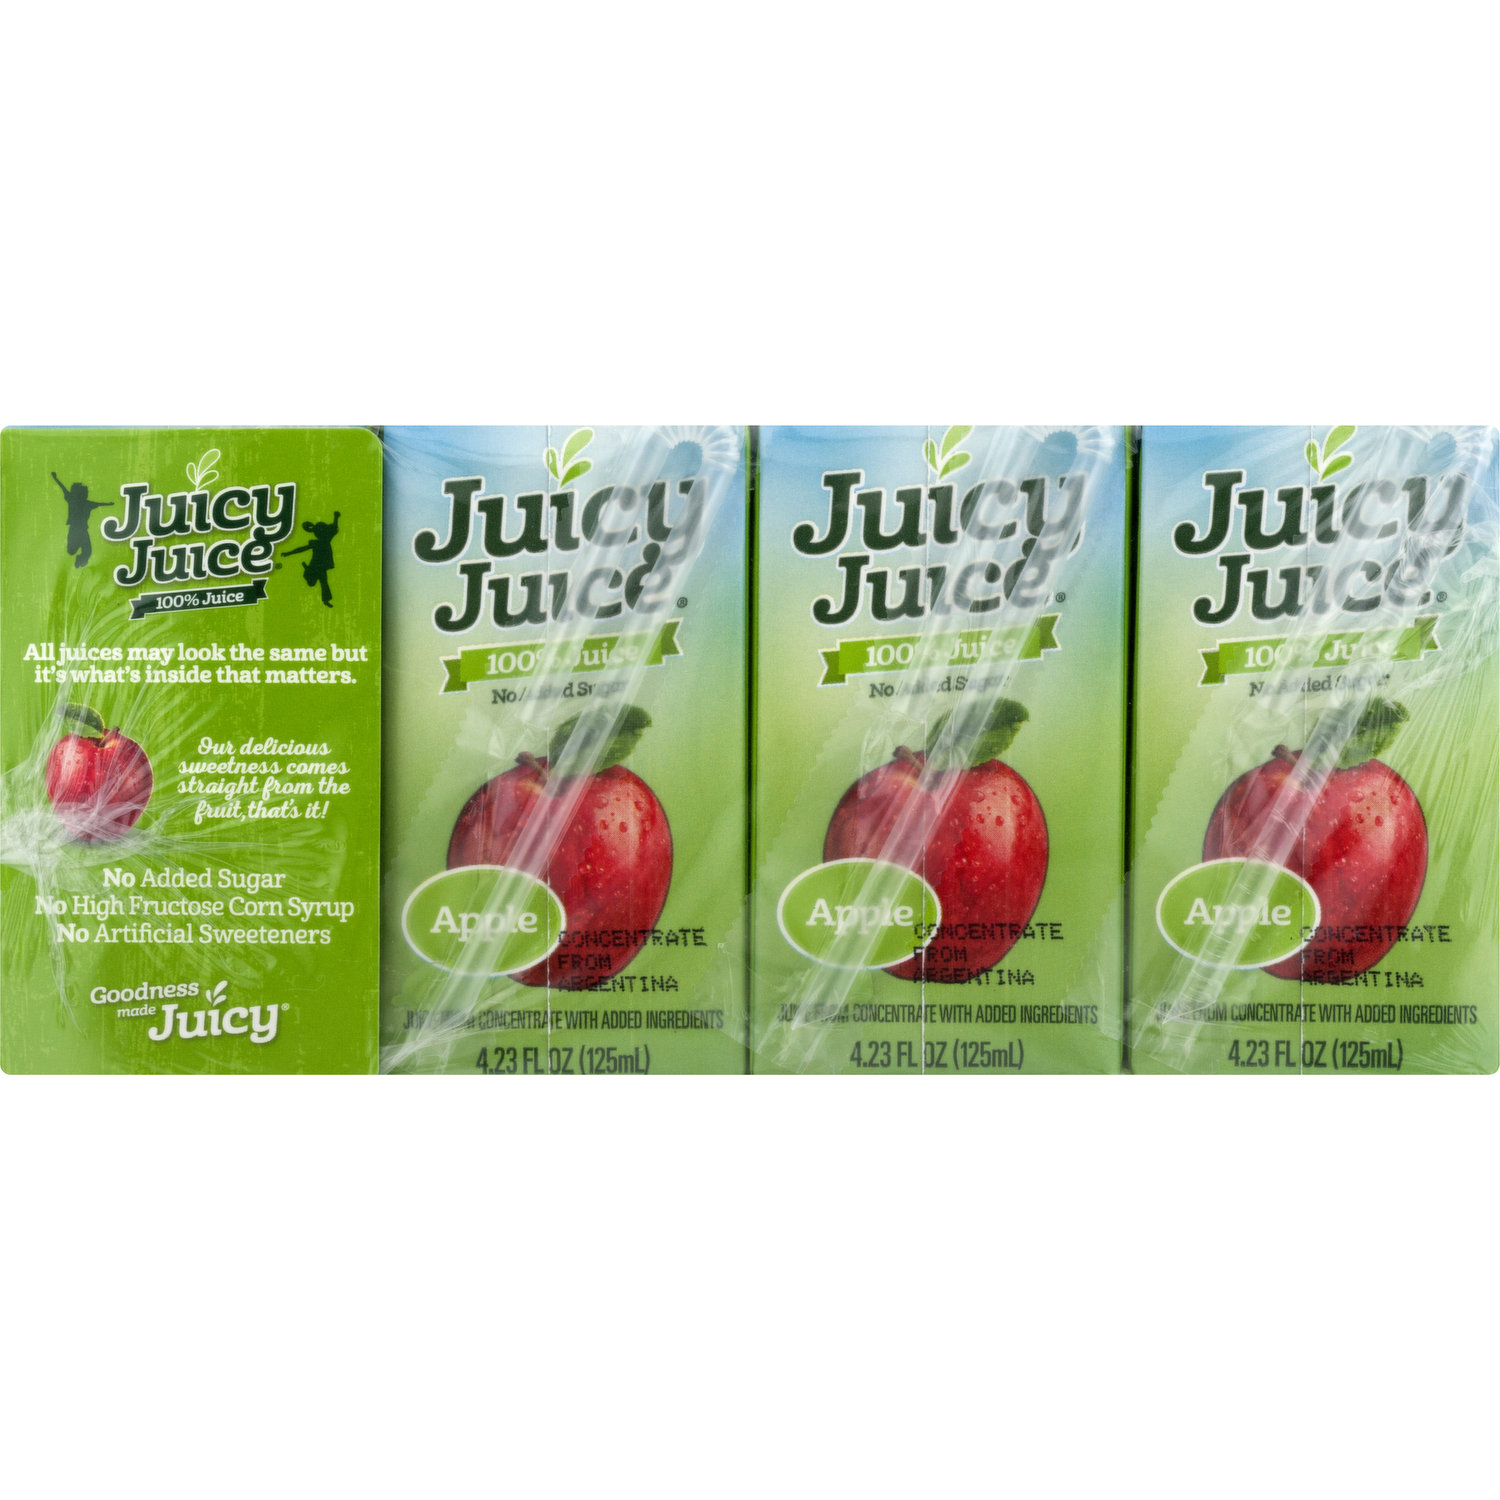 juicy juice apple juice box